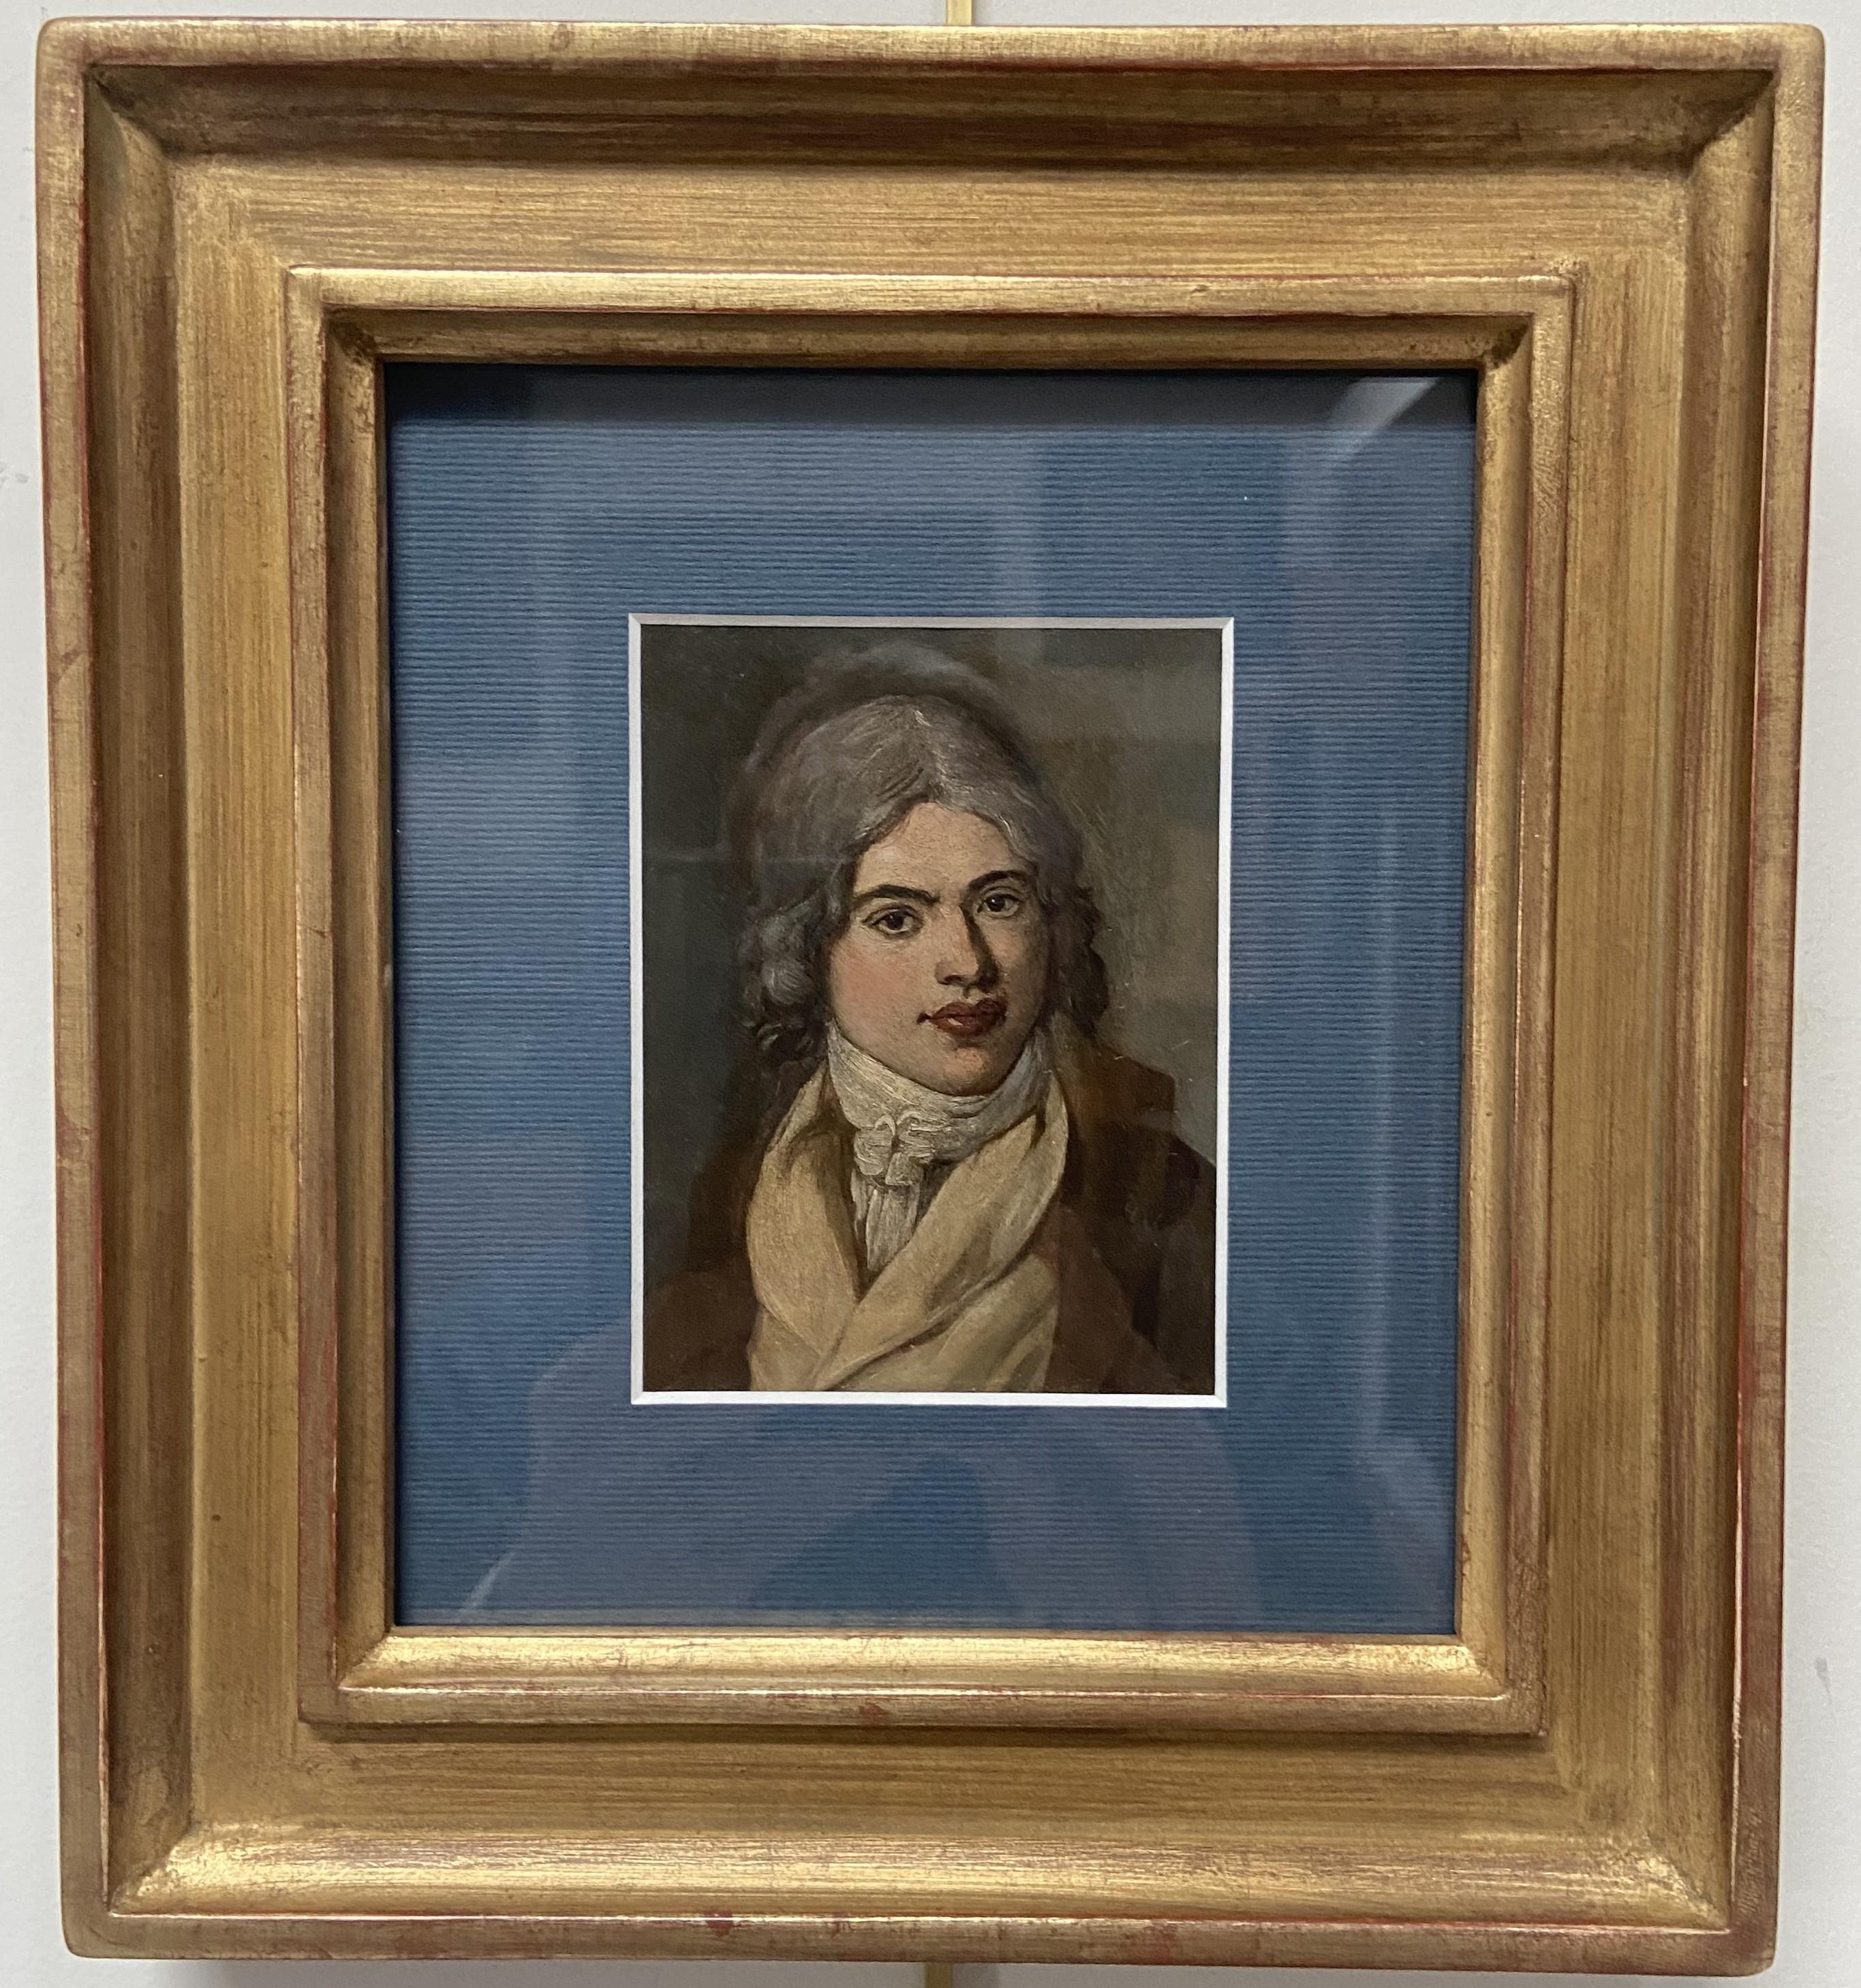 Französische Schule des späten 18. Jahrhunderts, Porträt eines jungen Mannes, Öl auf Metall – Painting von Unknown